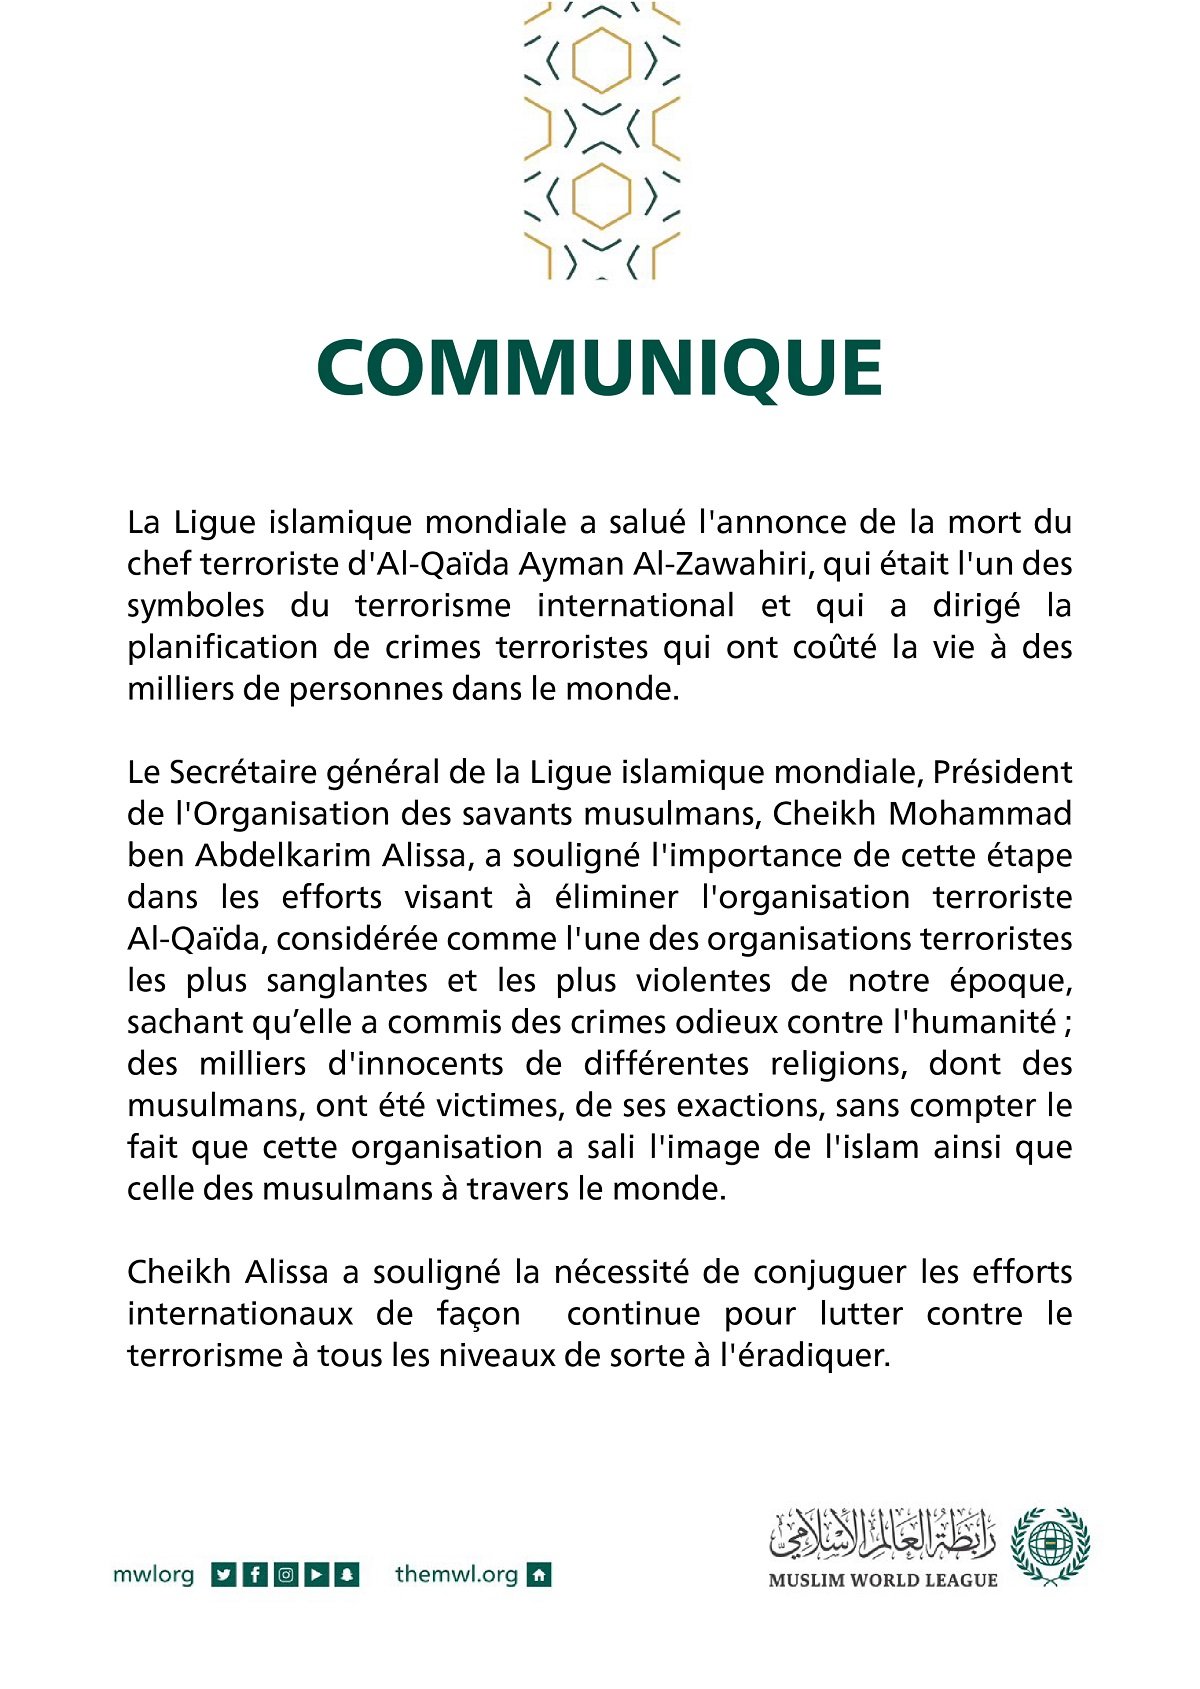 Communique de la Ligue Islamique Mondiale :